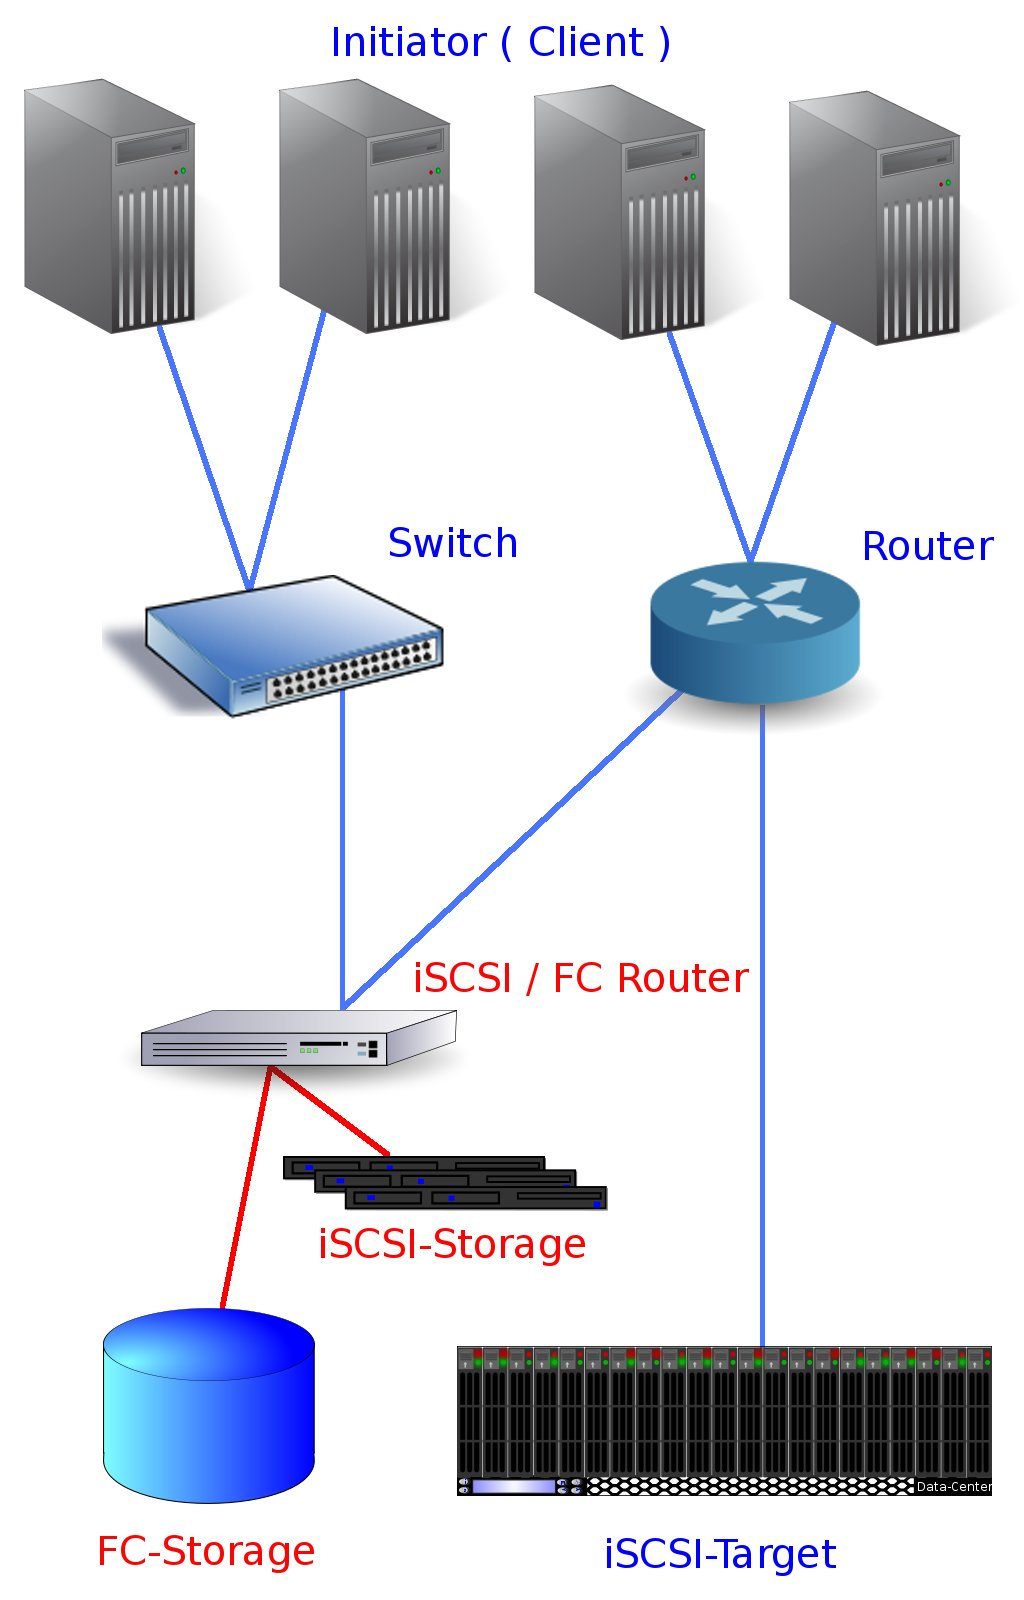 Durch Netzwerkrouter können auch entfernte Standorte an das iscsiund FC-Netz angebunden werden. Spezielle Hardware wie z.b. ein FC / iscsi Router können verschiedene Storage-systeme ansteuern.